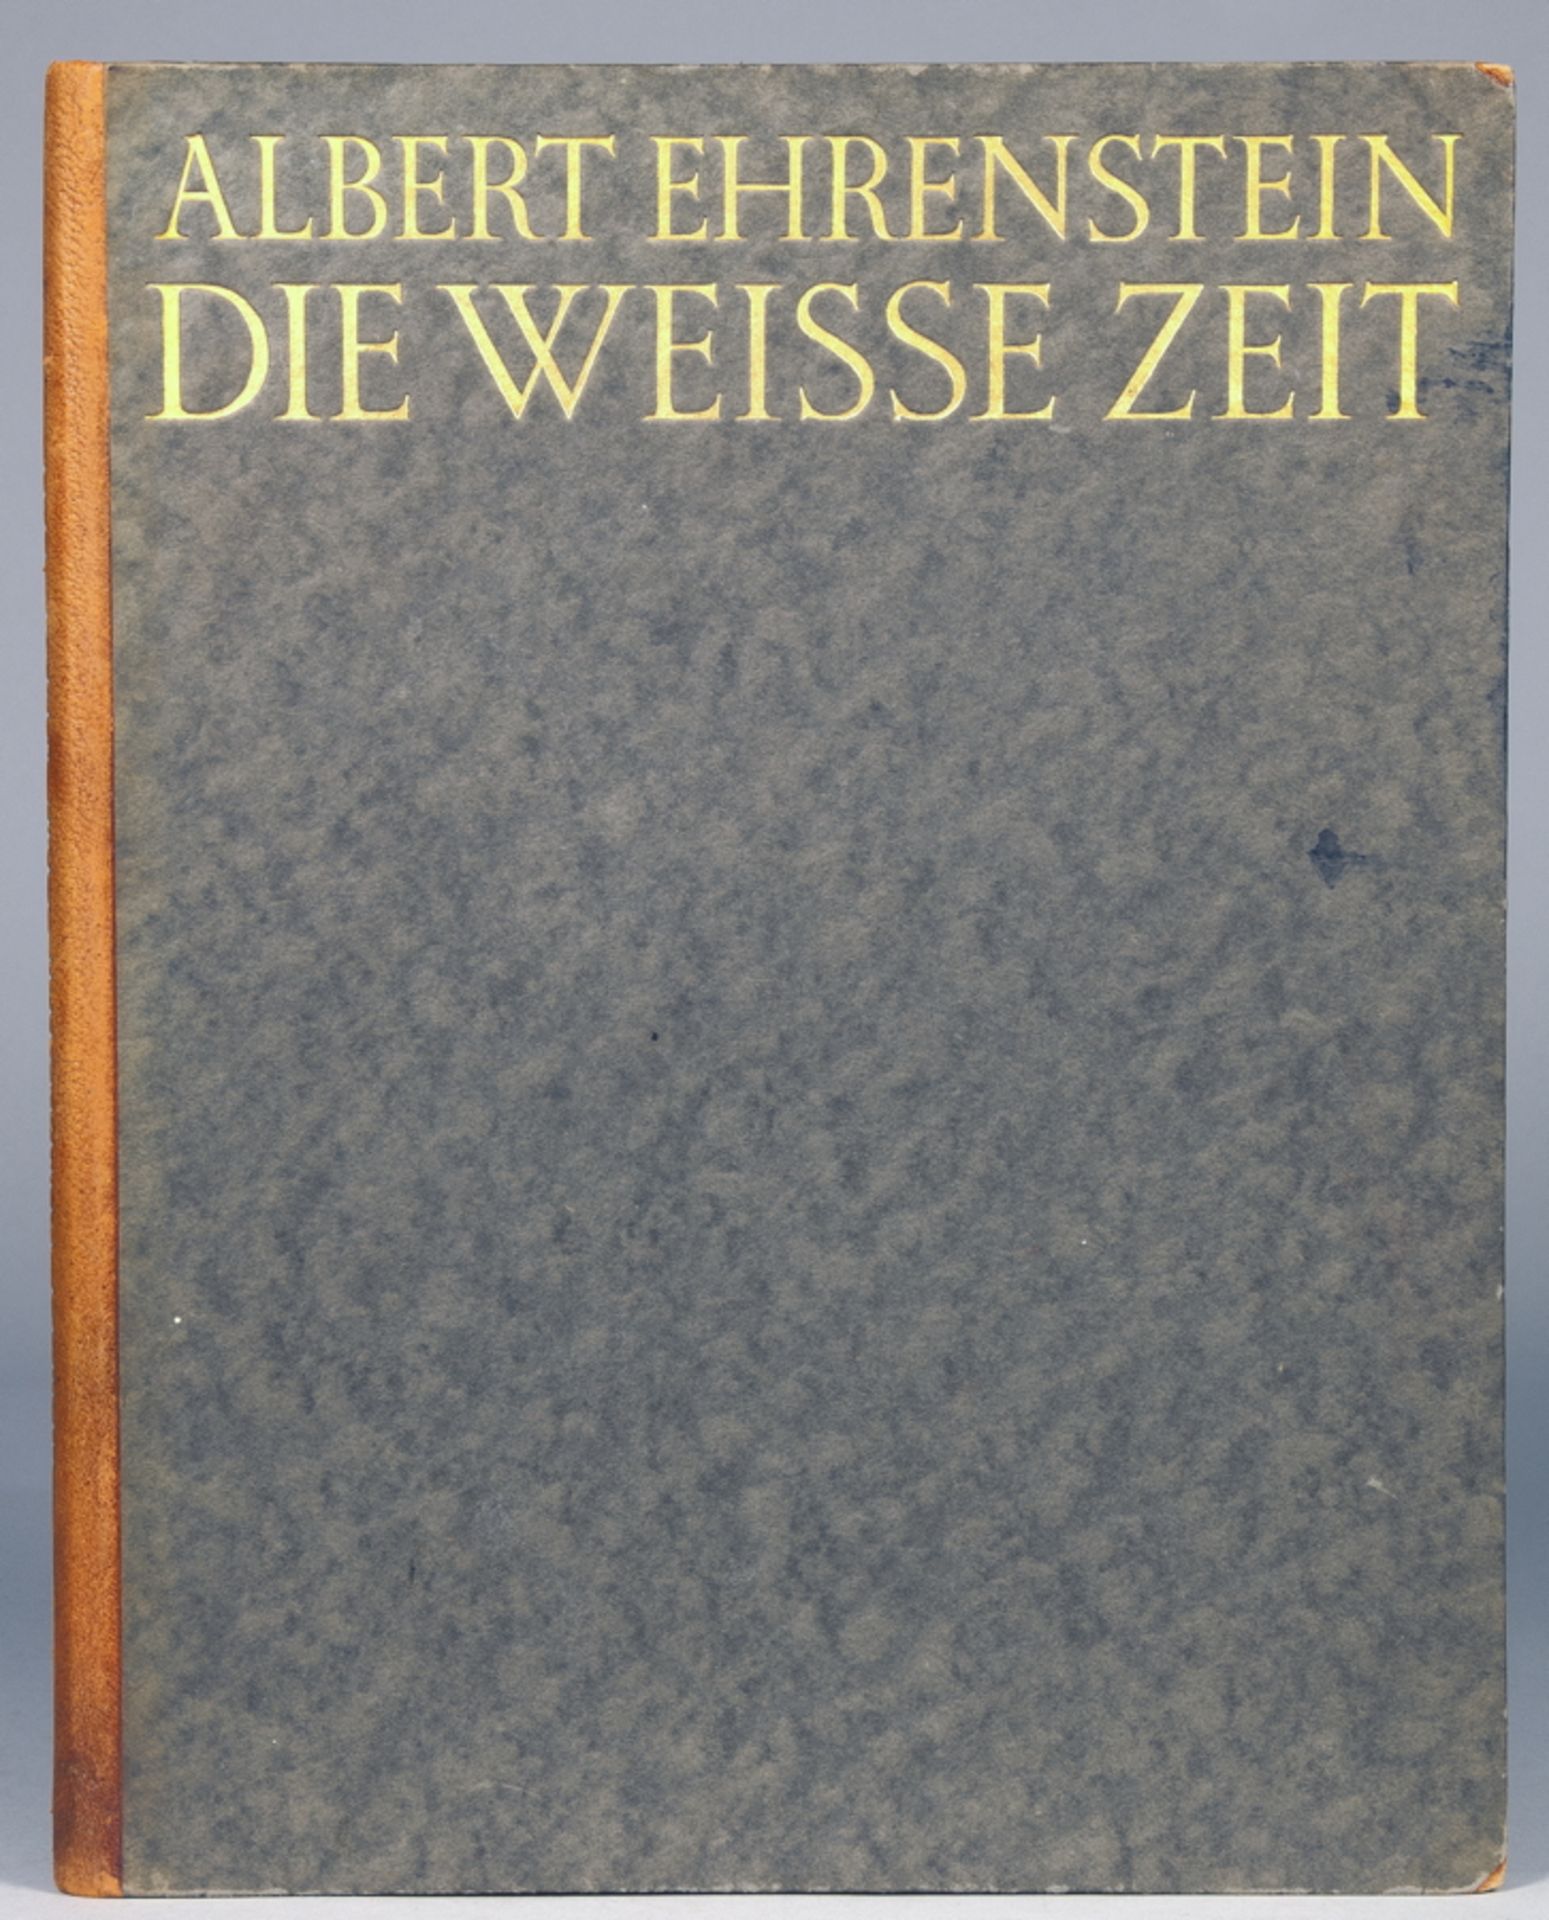 Albert Ehrenstein. Die weiße Zeit. München, Georg Müller 1914. Originalhalblederband mit